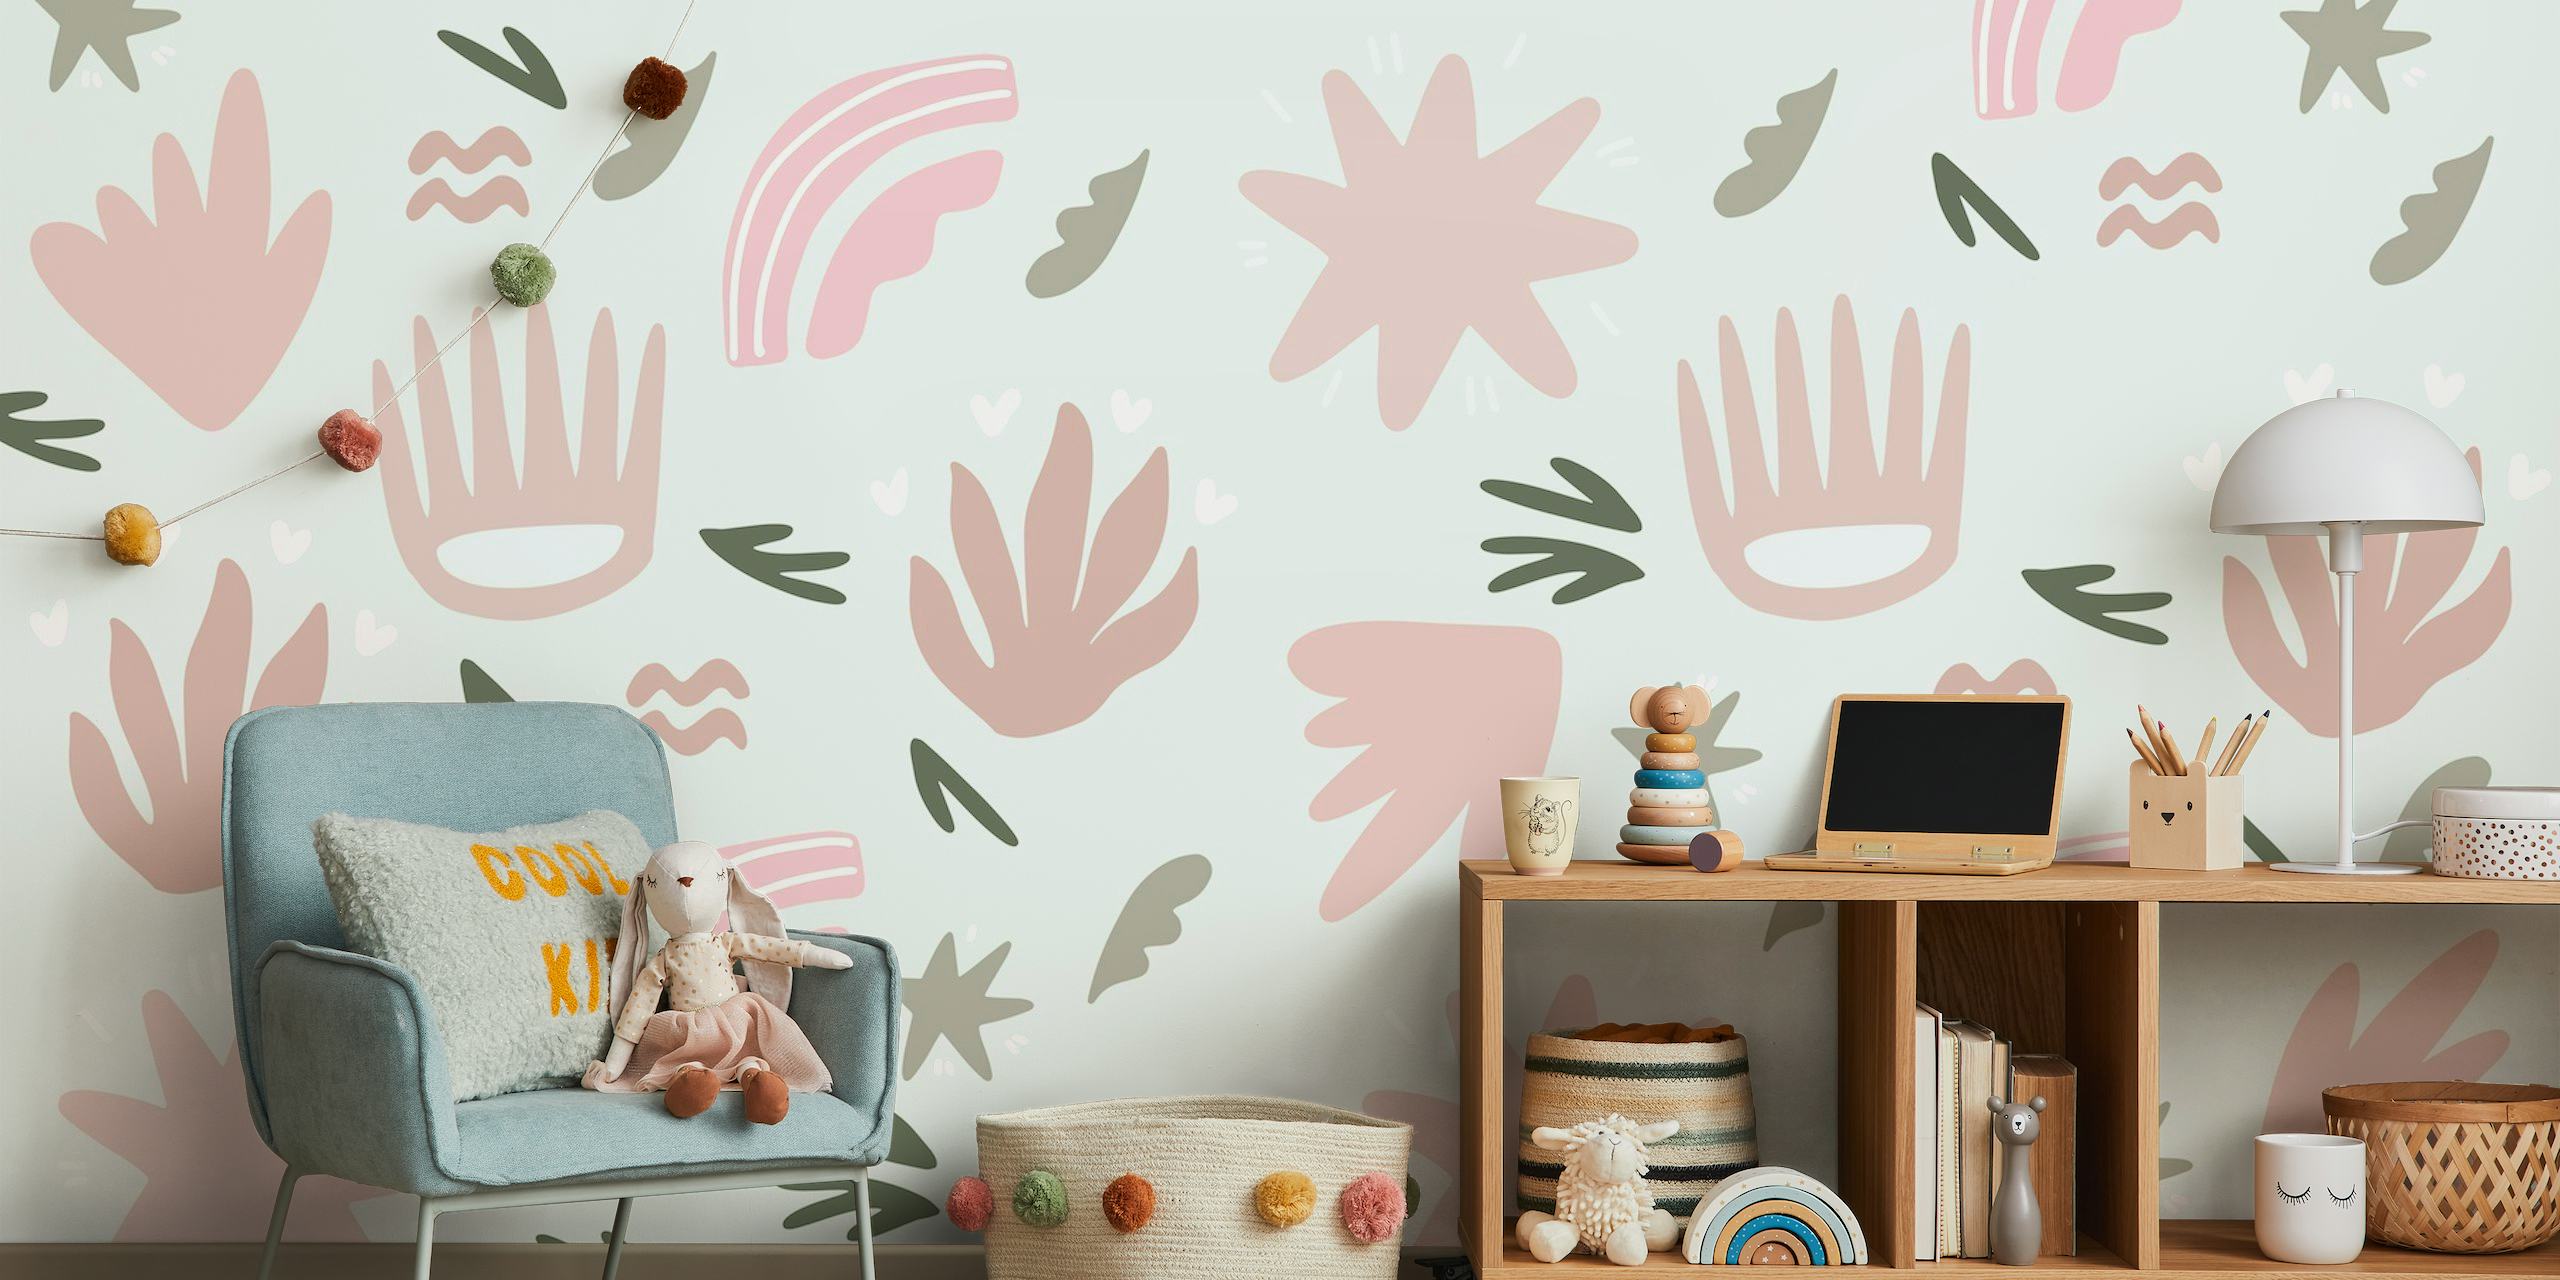 Apstraktni razigrani cvjetni zidni mural u nježno ružičastim i sivim bojama za dječju sobu